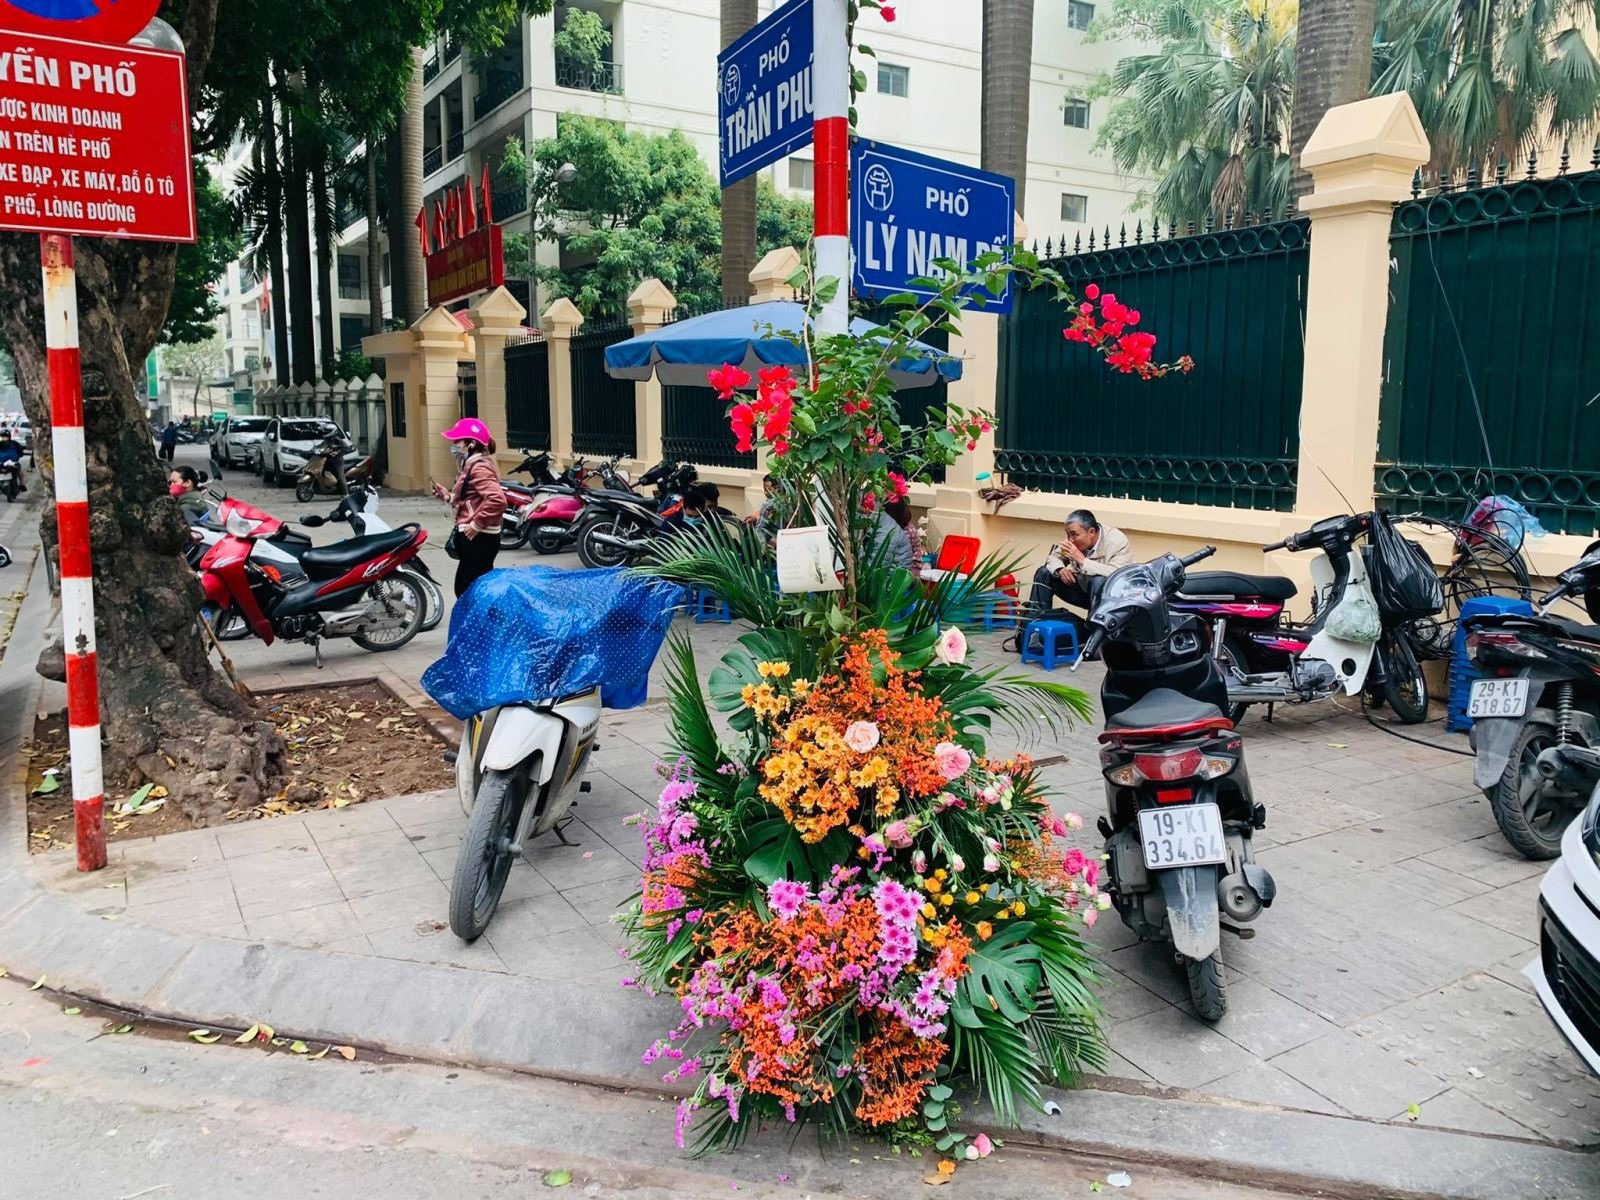 Các biển chỉ đường cũng được trang trí bằng hoa tươi. Nhiều chị em bị thu hút bởi vẻ mới lạ, lần đầu xuất hiện trên đường phố Hà Nội.